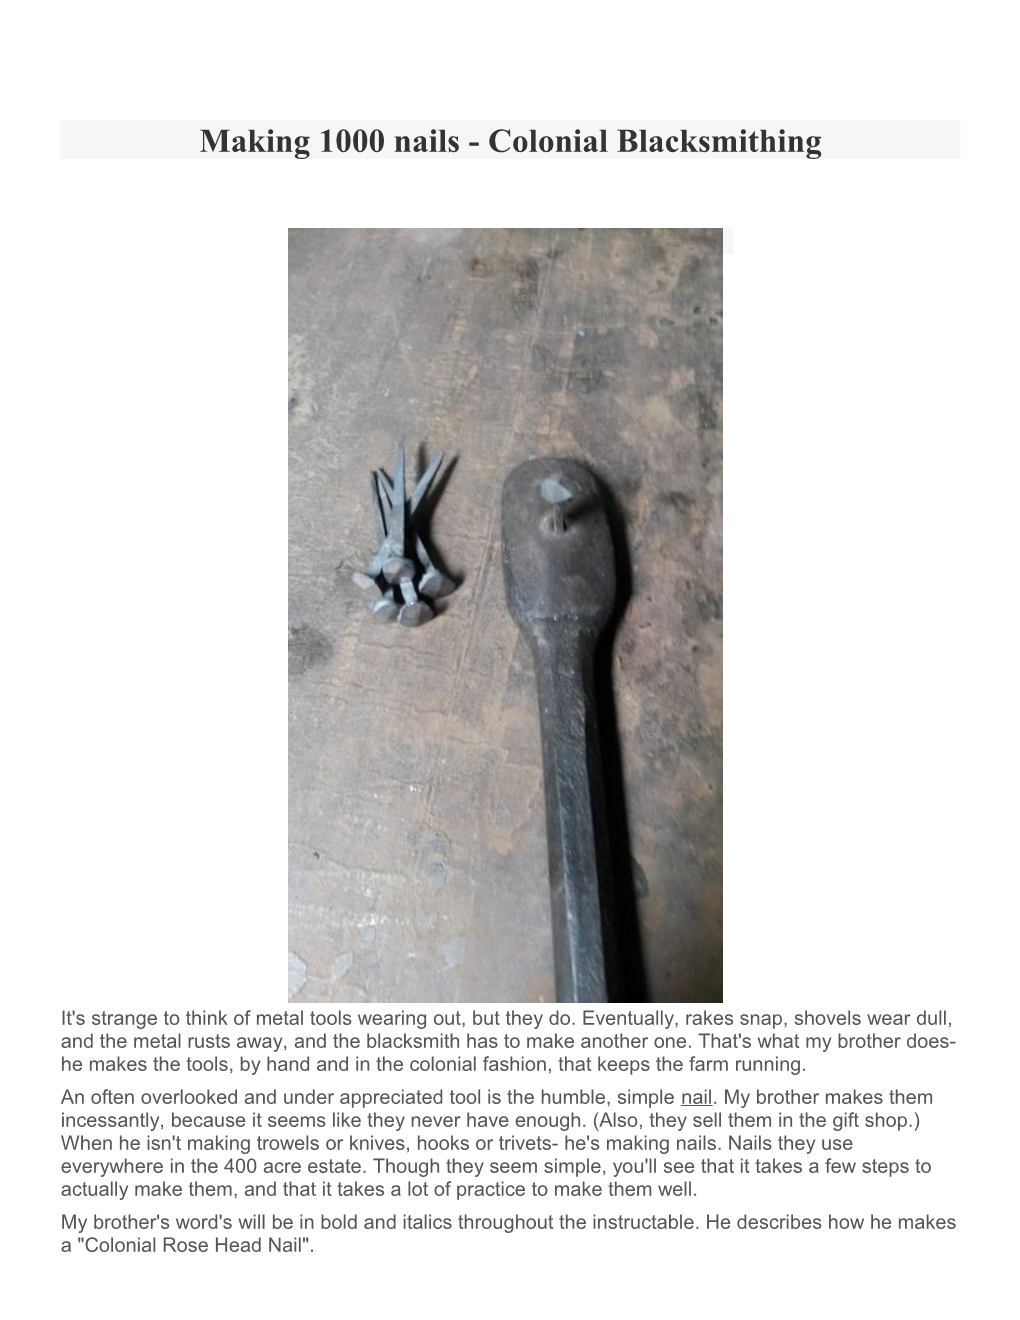 Making 1000 Nails - Colonial Blacksmithing